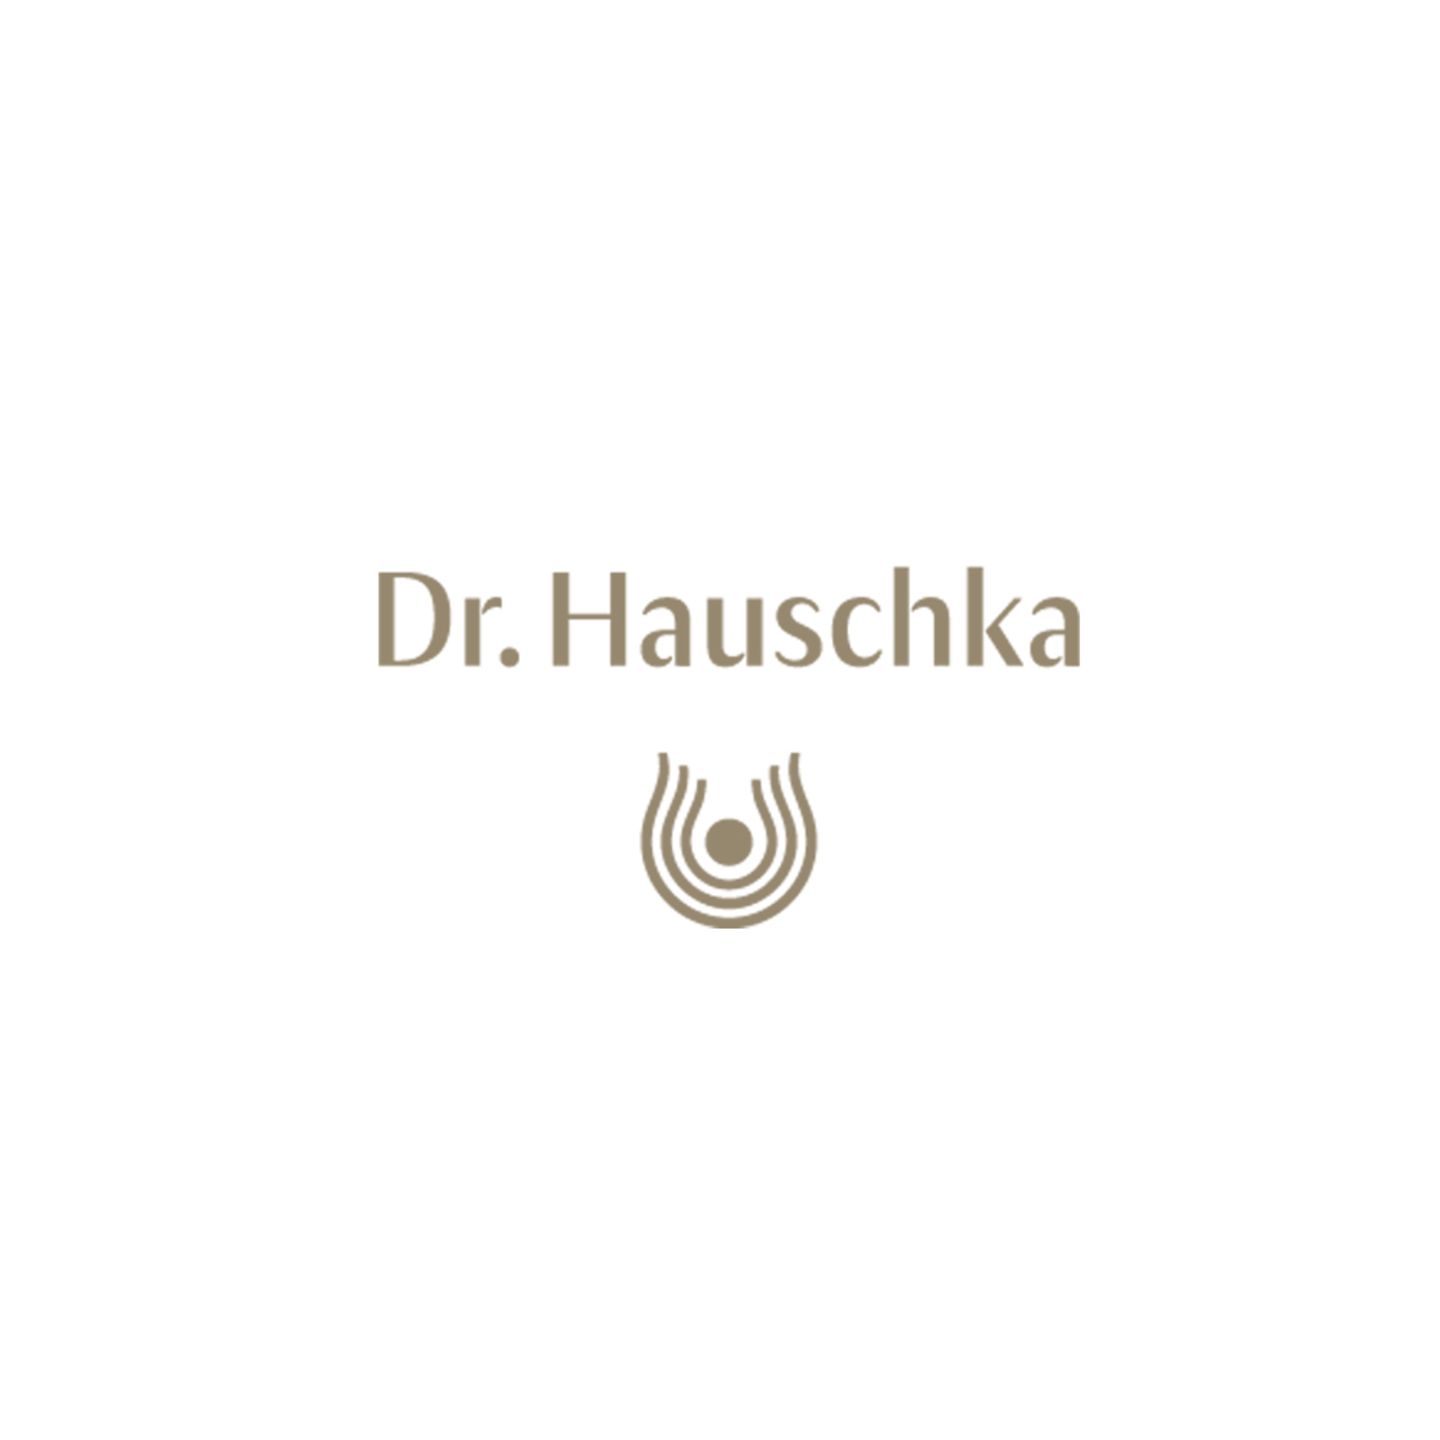 BRIGITTE Style Day: Dr. Hauschka